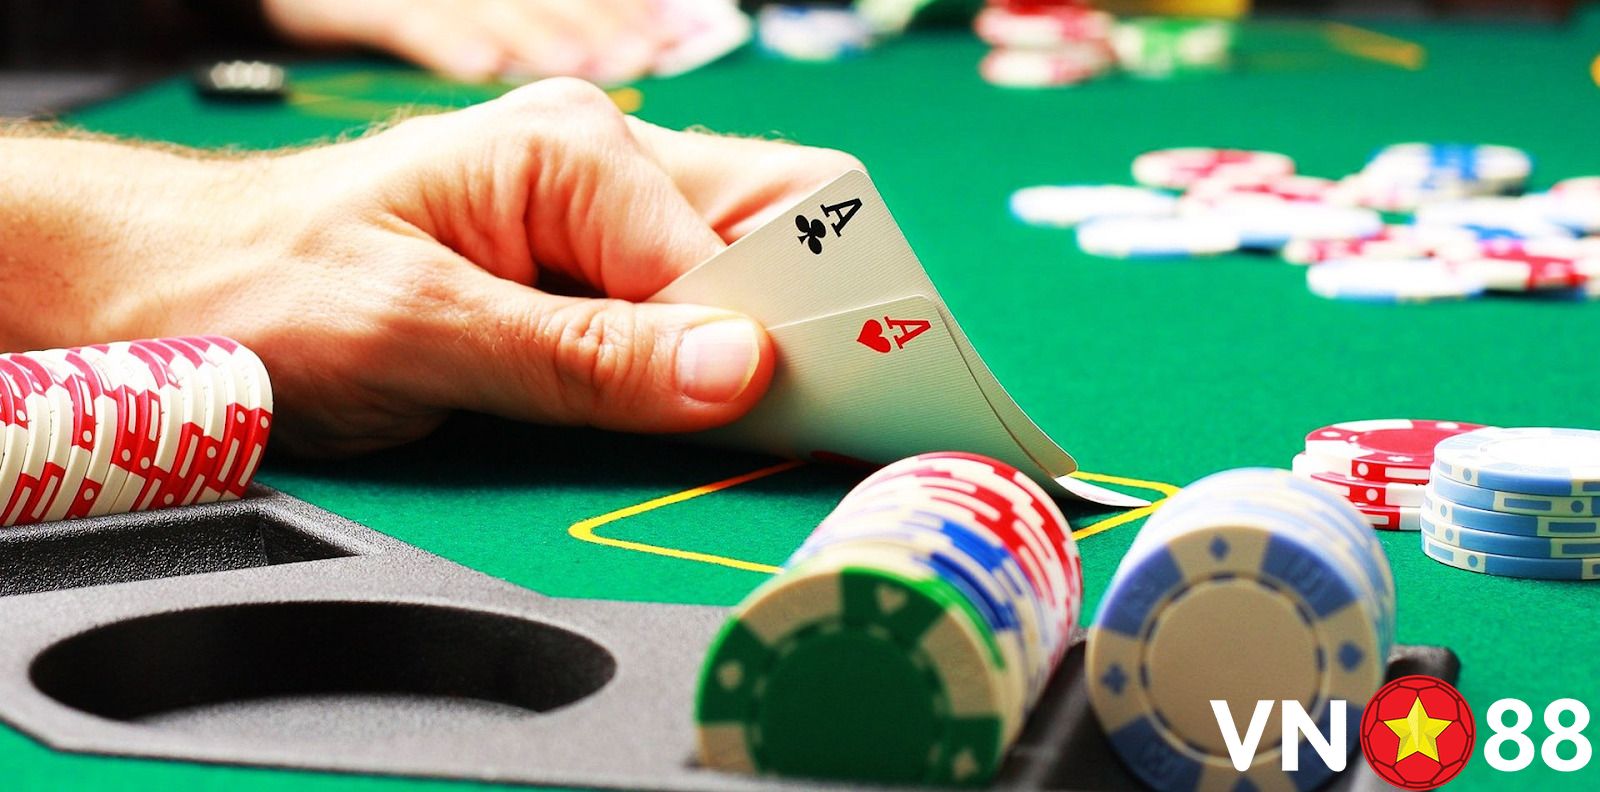 Cách chơi Poker Texas qua cách so bài rất quan trọng